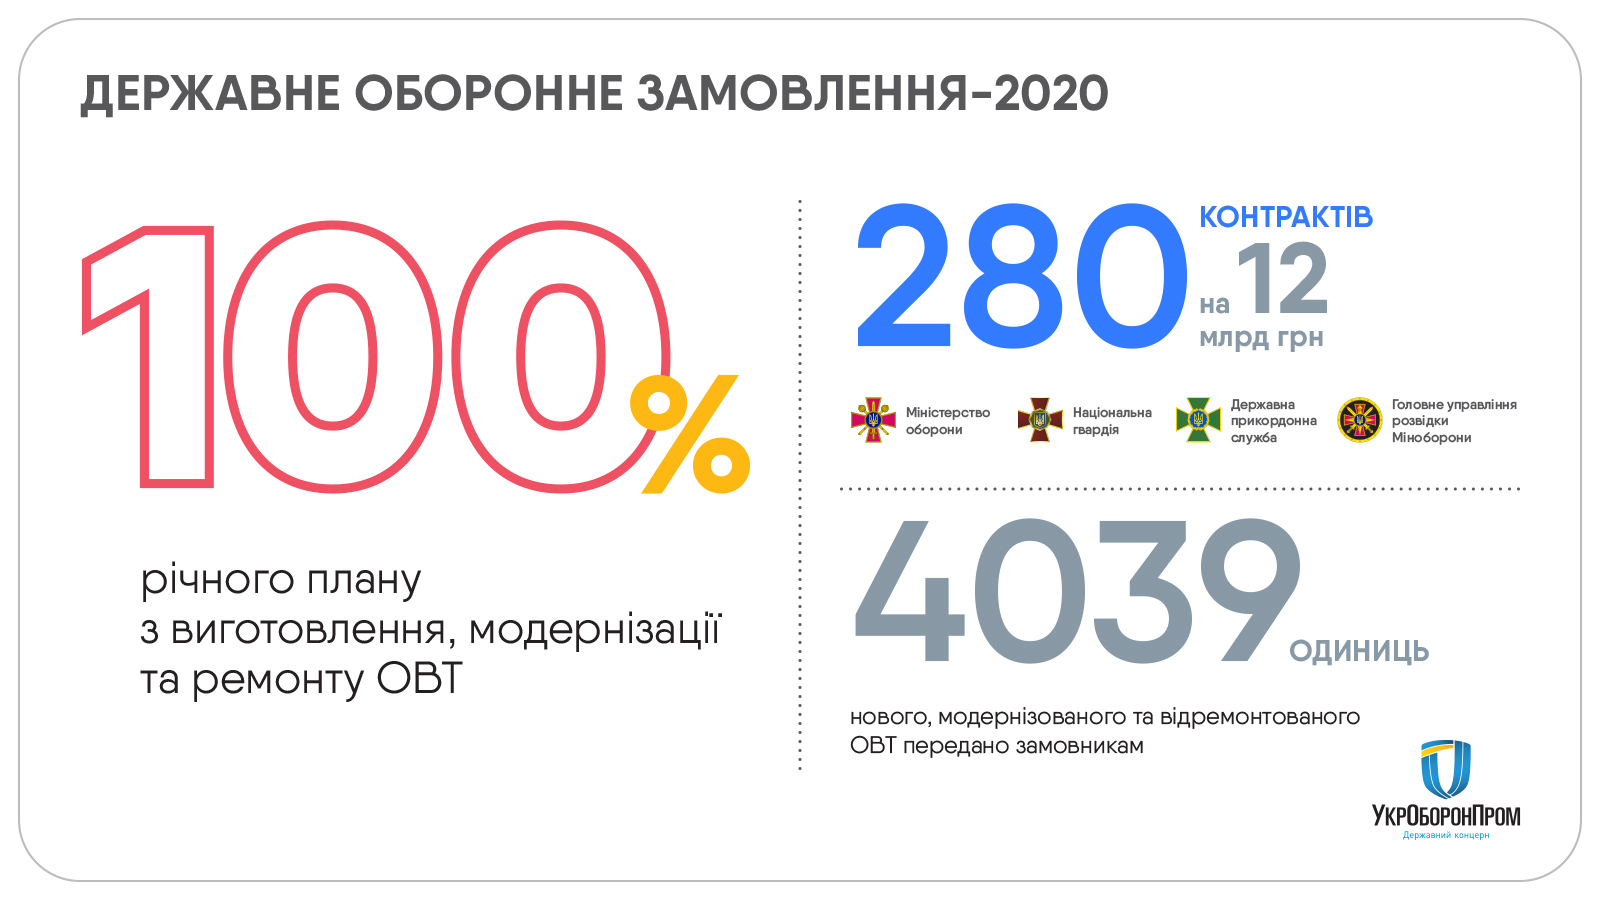 Выполнив план: в 2020 году Укроборонпром получил более 12 млрд гривен - фото 2